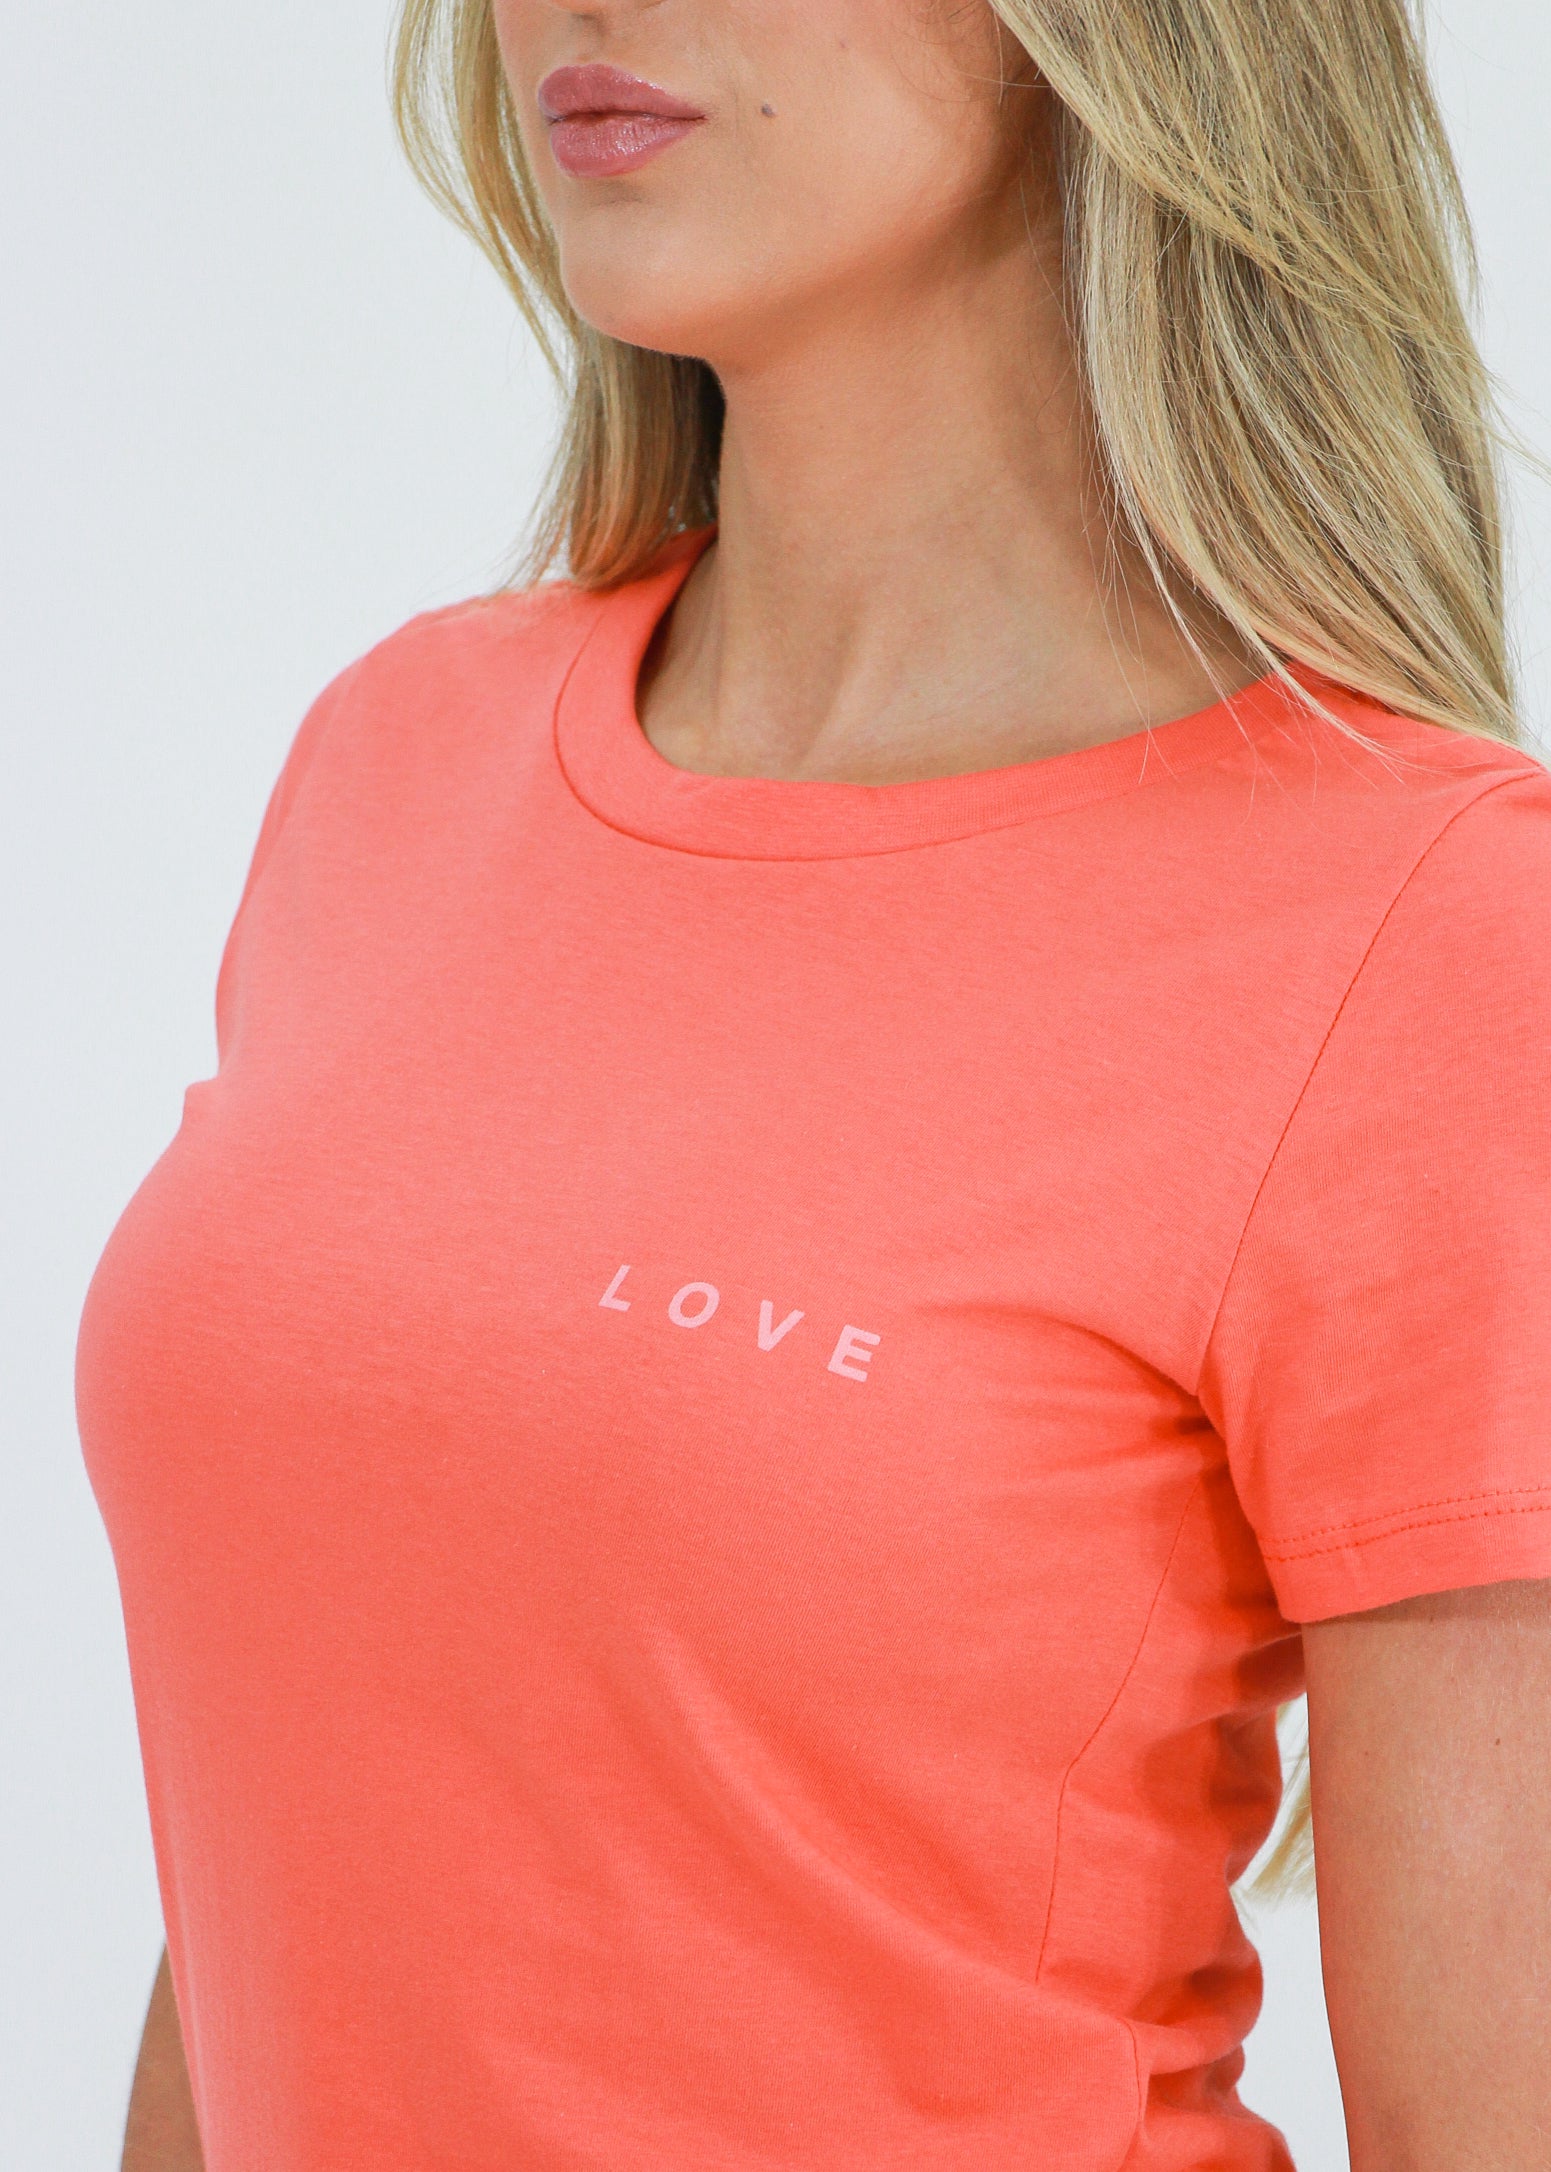 Camiseta Love - Coral